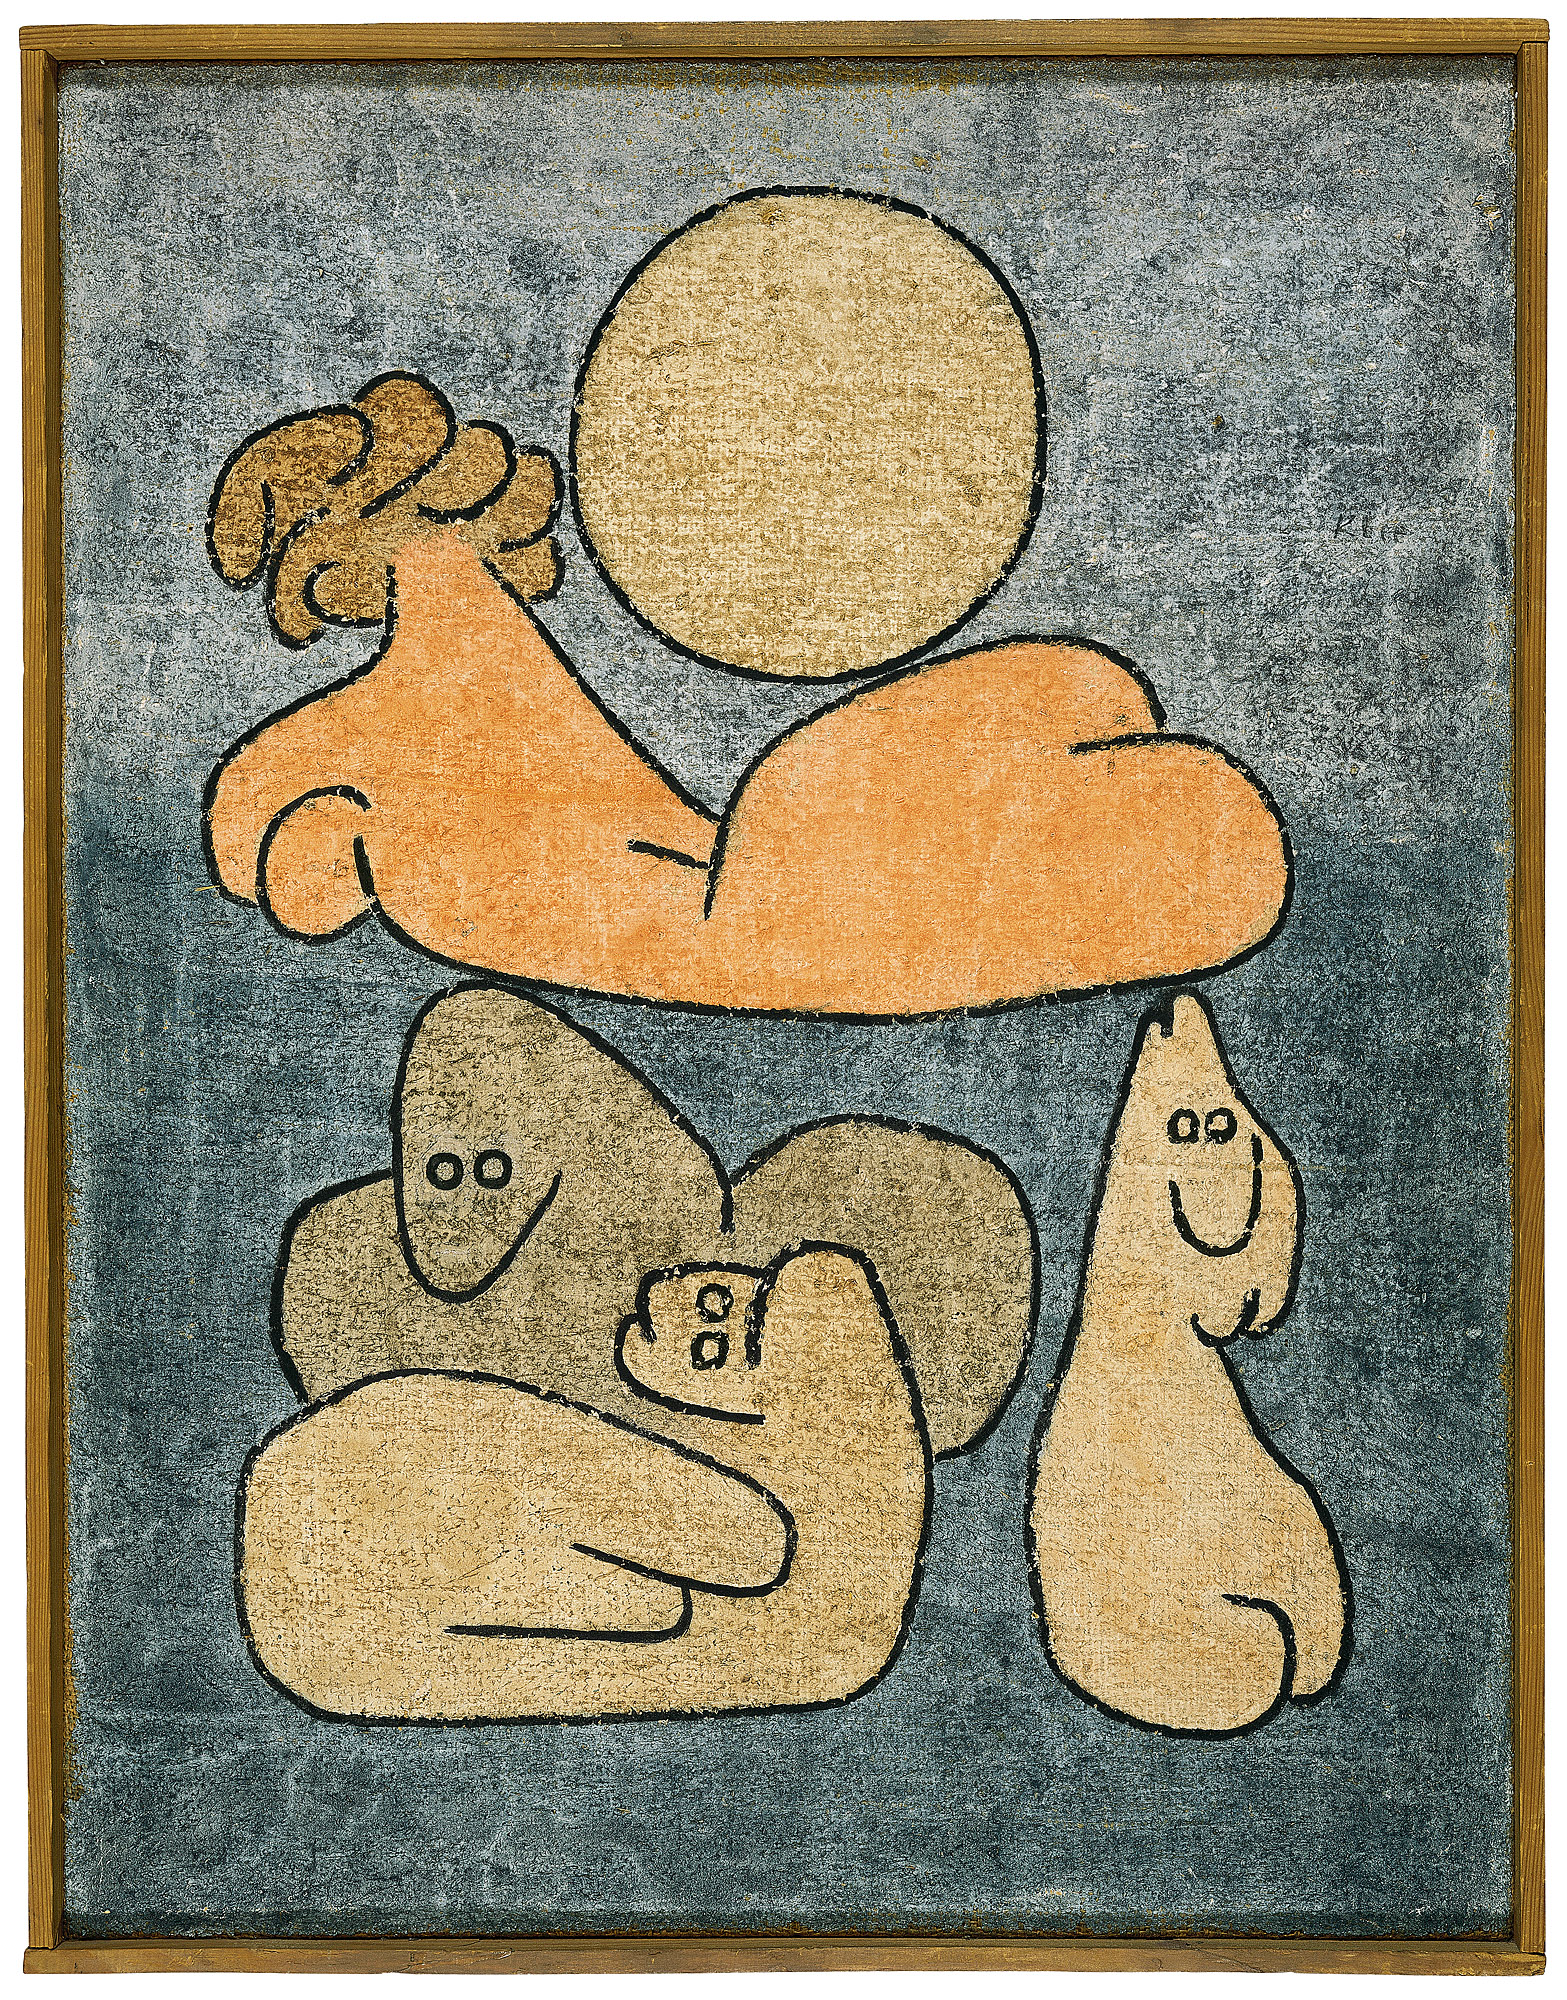 Tułów i krewni (przy pełni księżyca) by Paul Klee - 1939 - 65 x 50 cm 